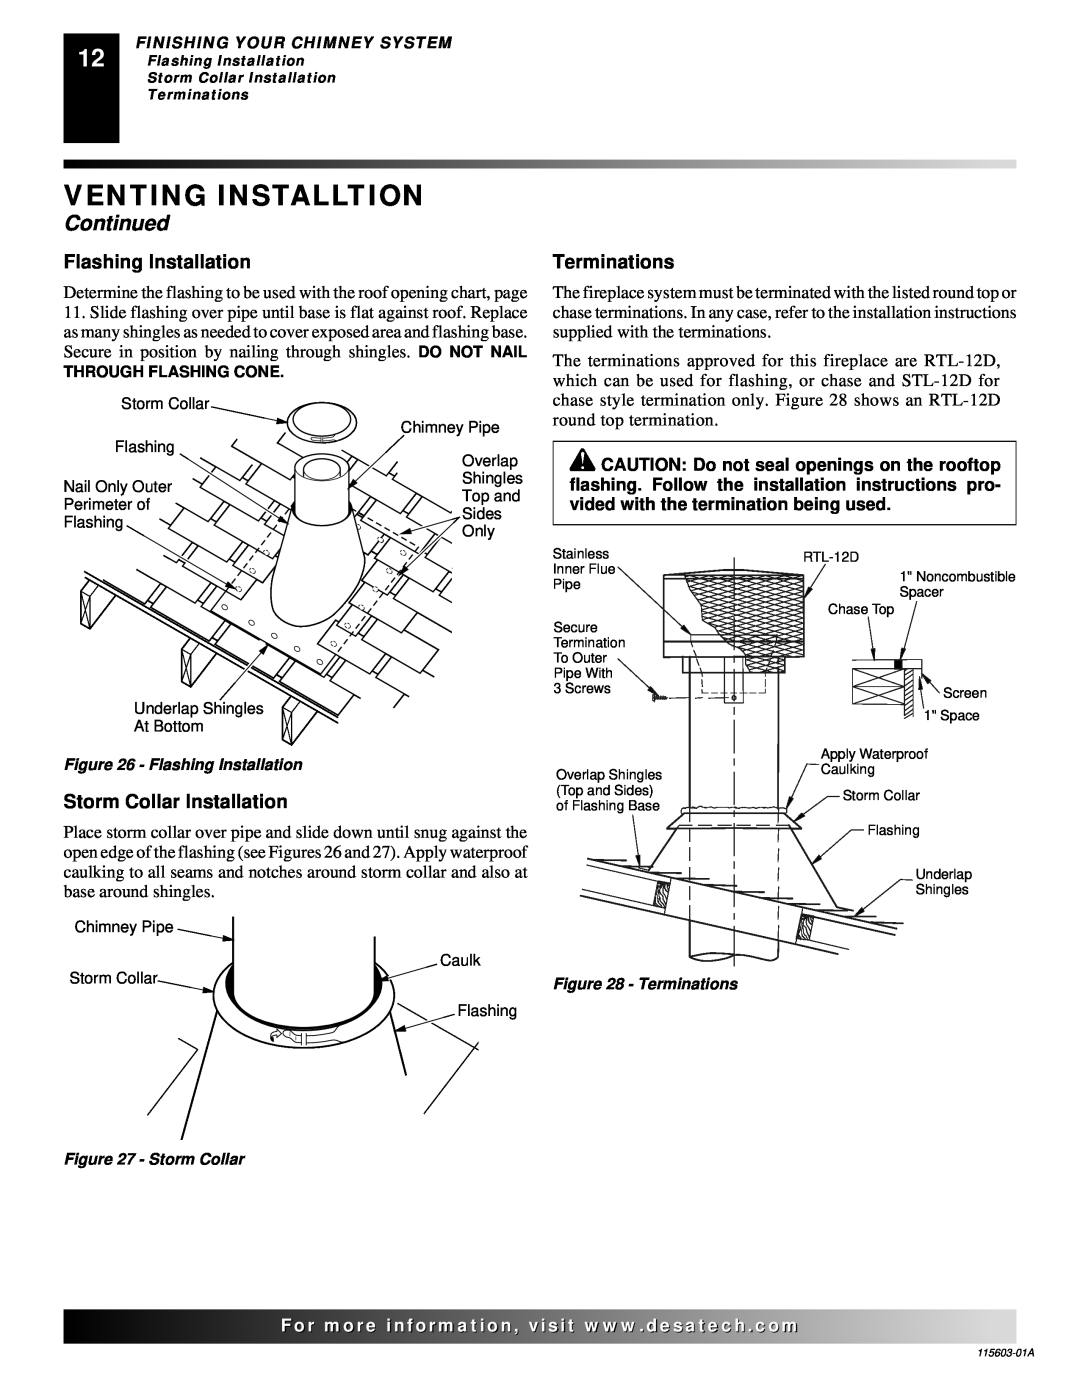 Desa (V)3612ST Venting Installtion, Continued, Flashing Installation, Terminations, Storm Collar Installation 